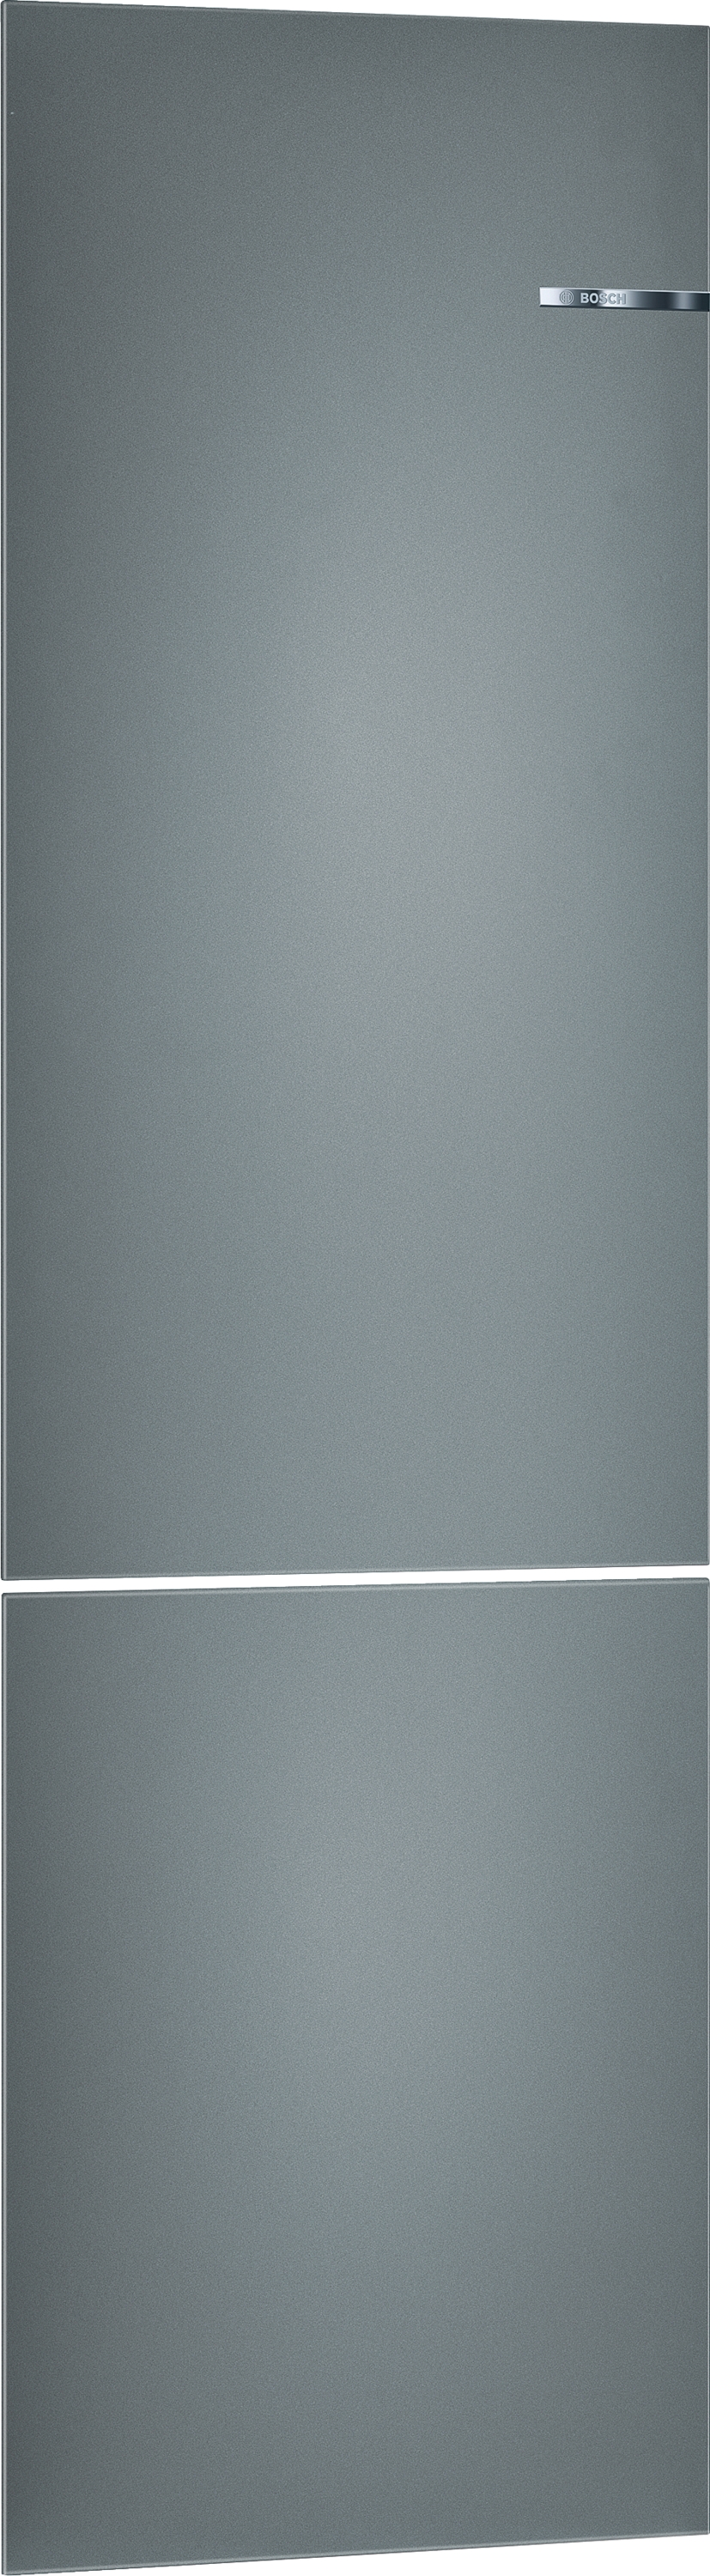 KSZ2BVG10,Seria 4, Ușă cu sistem de fixare Clip, Metallic grey